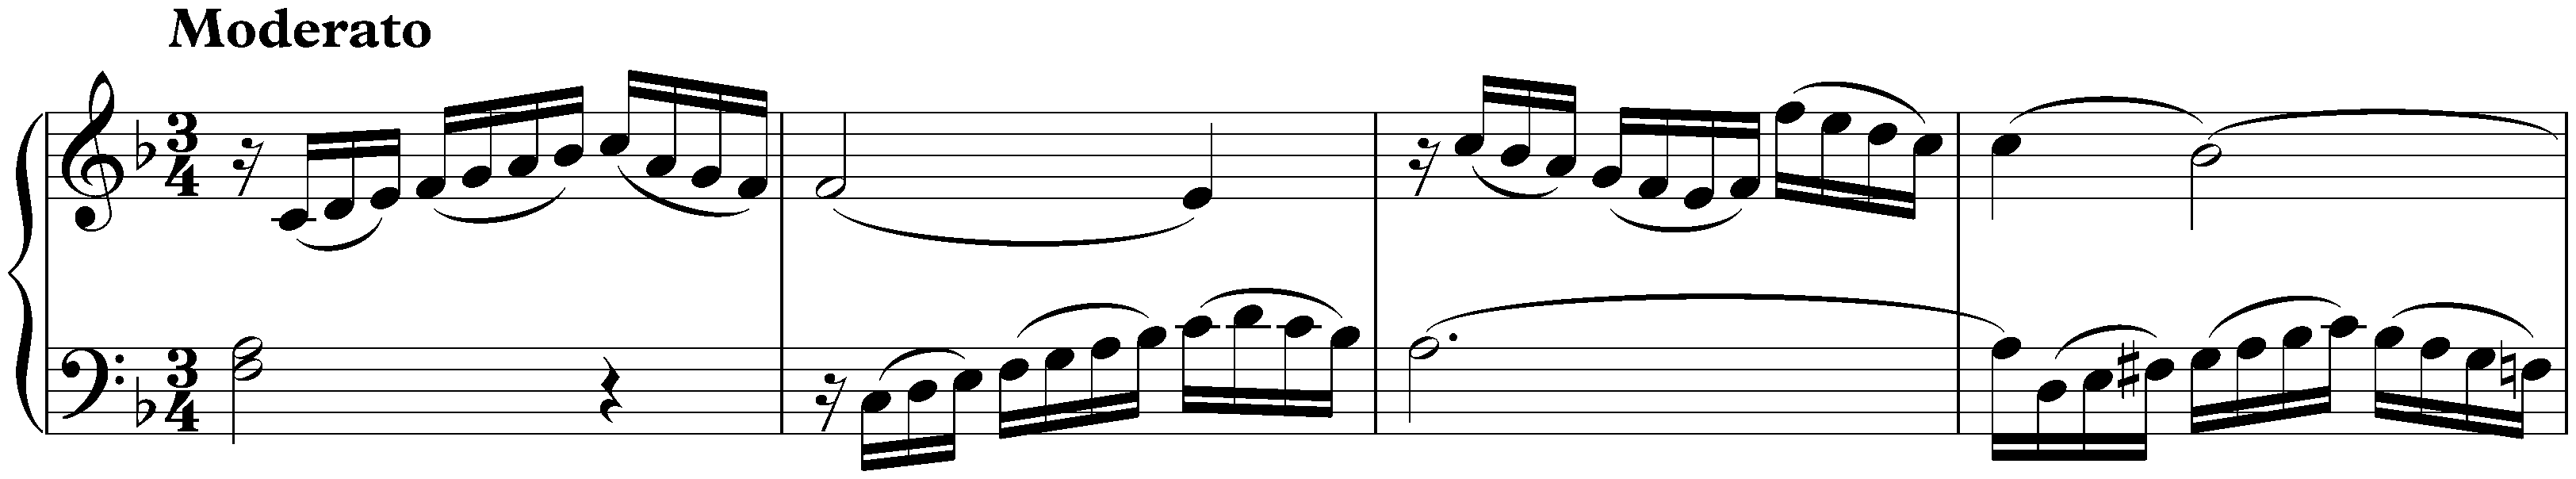 Sonata in F major, Hob. XVI:47; 1. Moderato